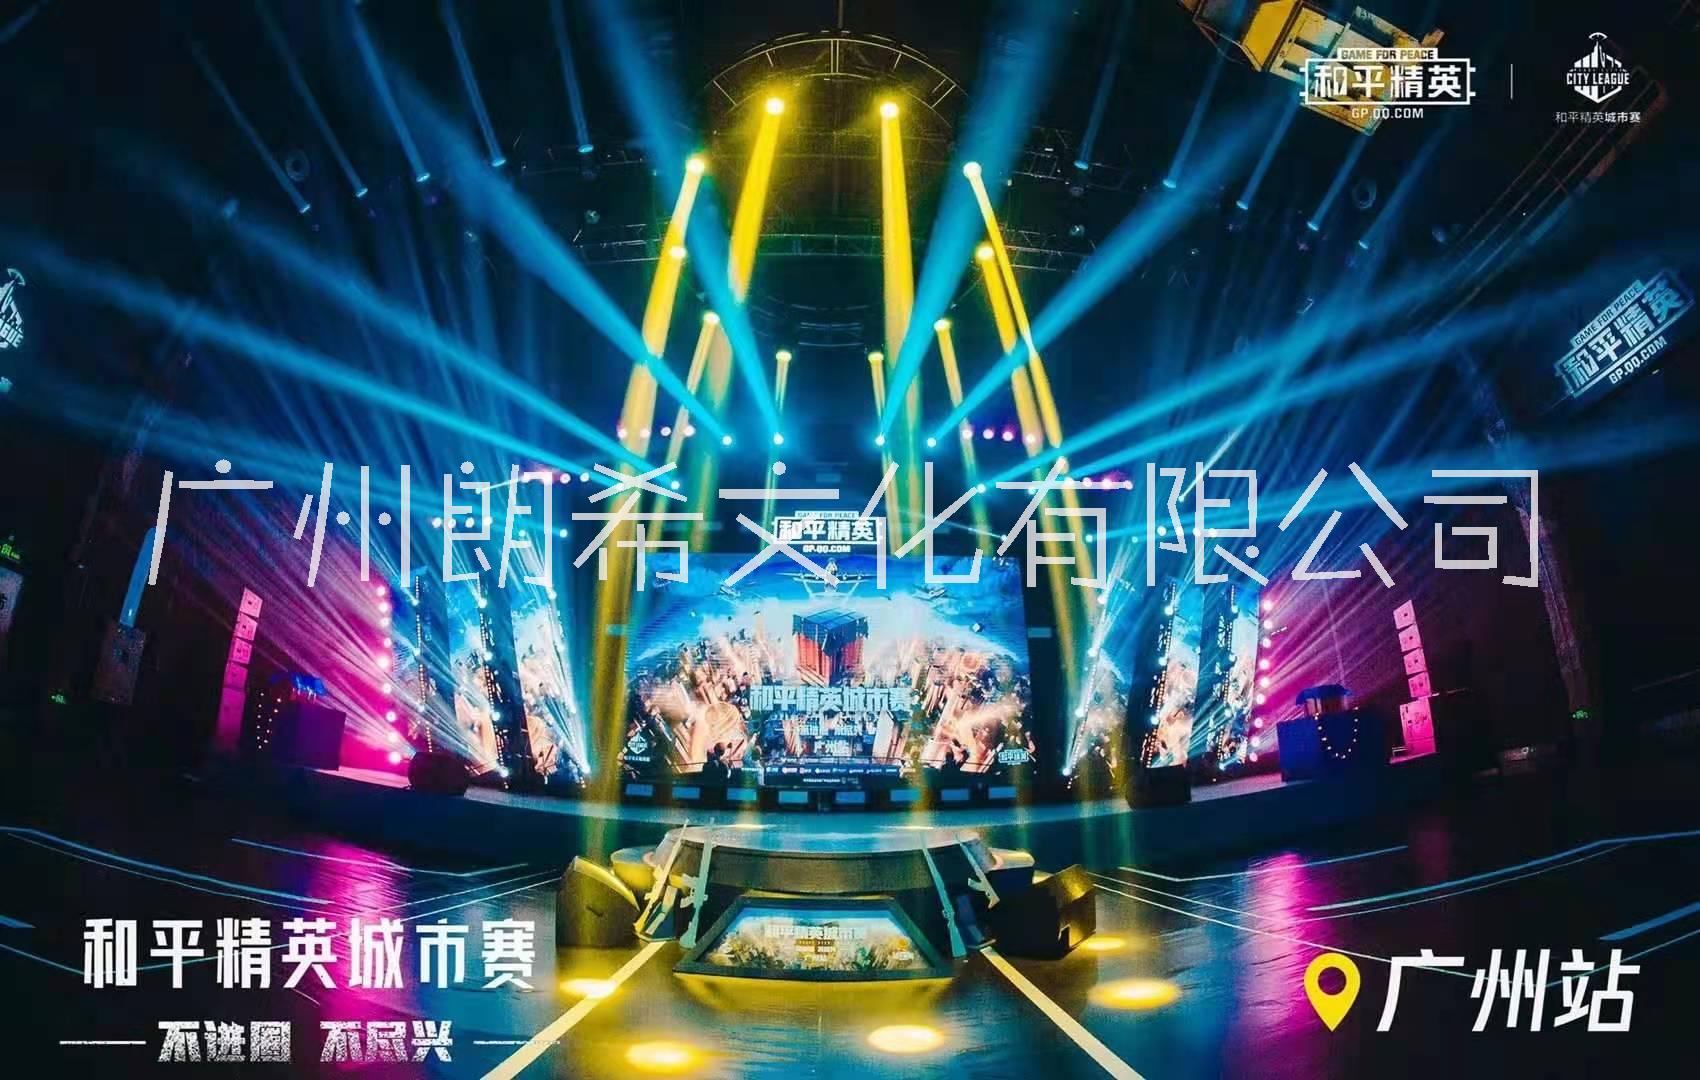 广州市舞台设备厂家舞台设备舞台音响主要设备种类有哪些